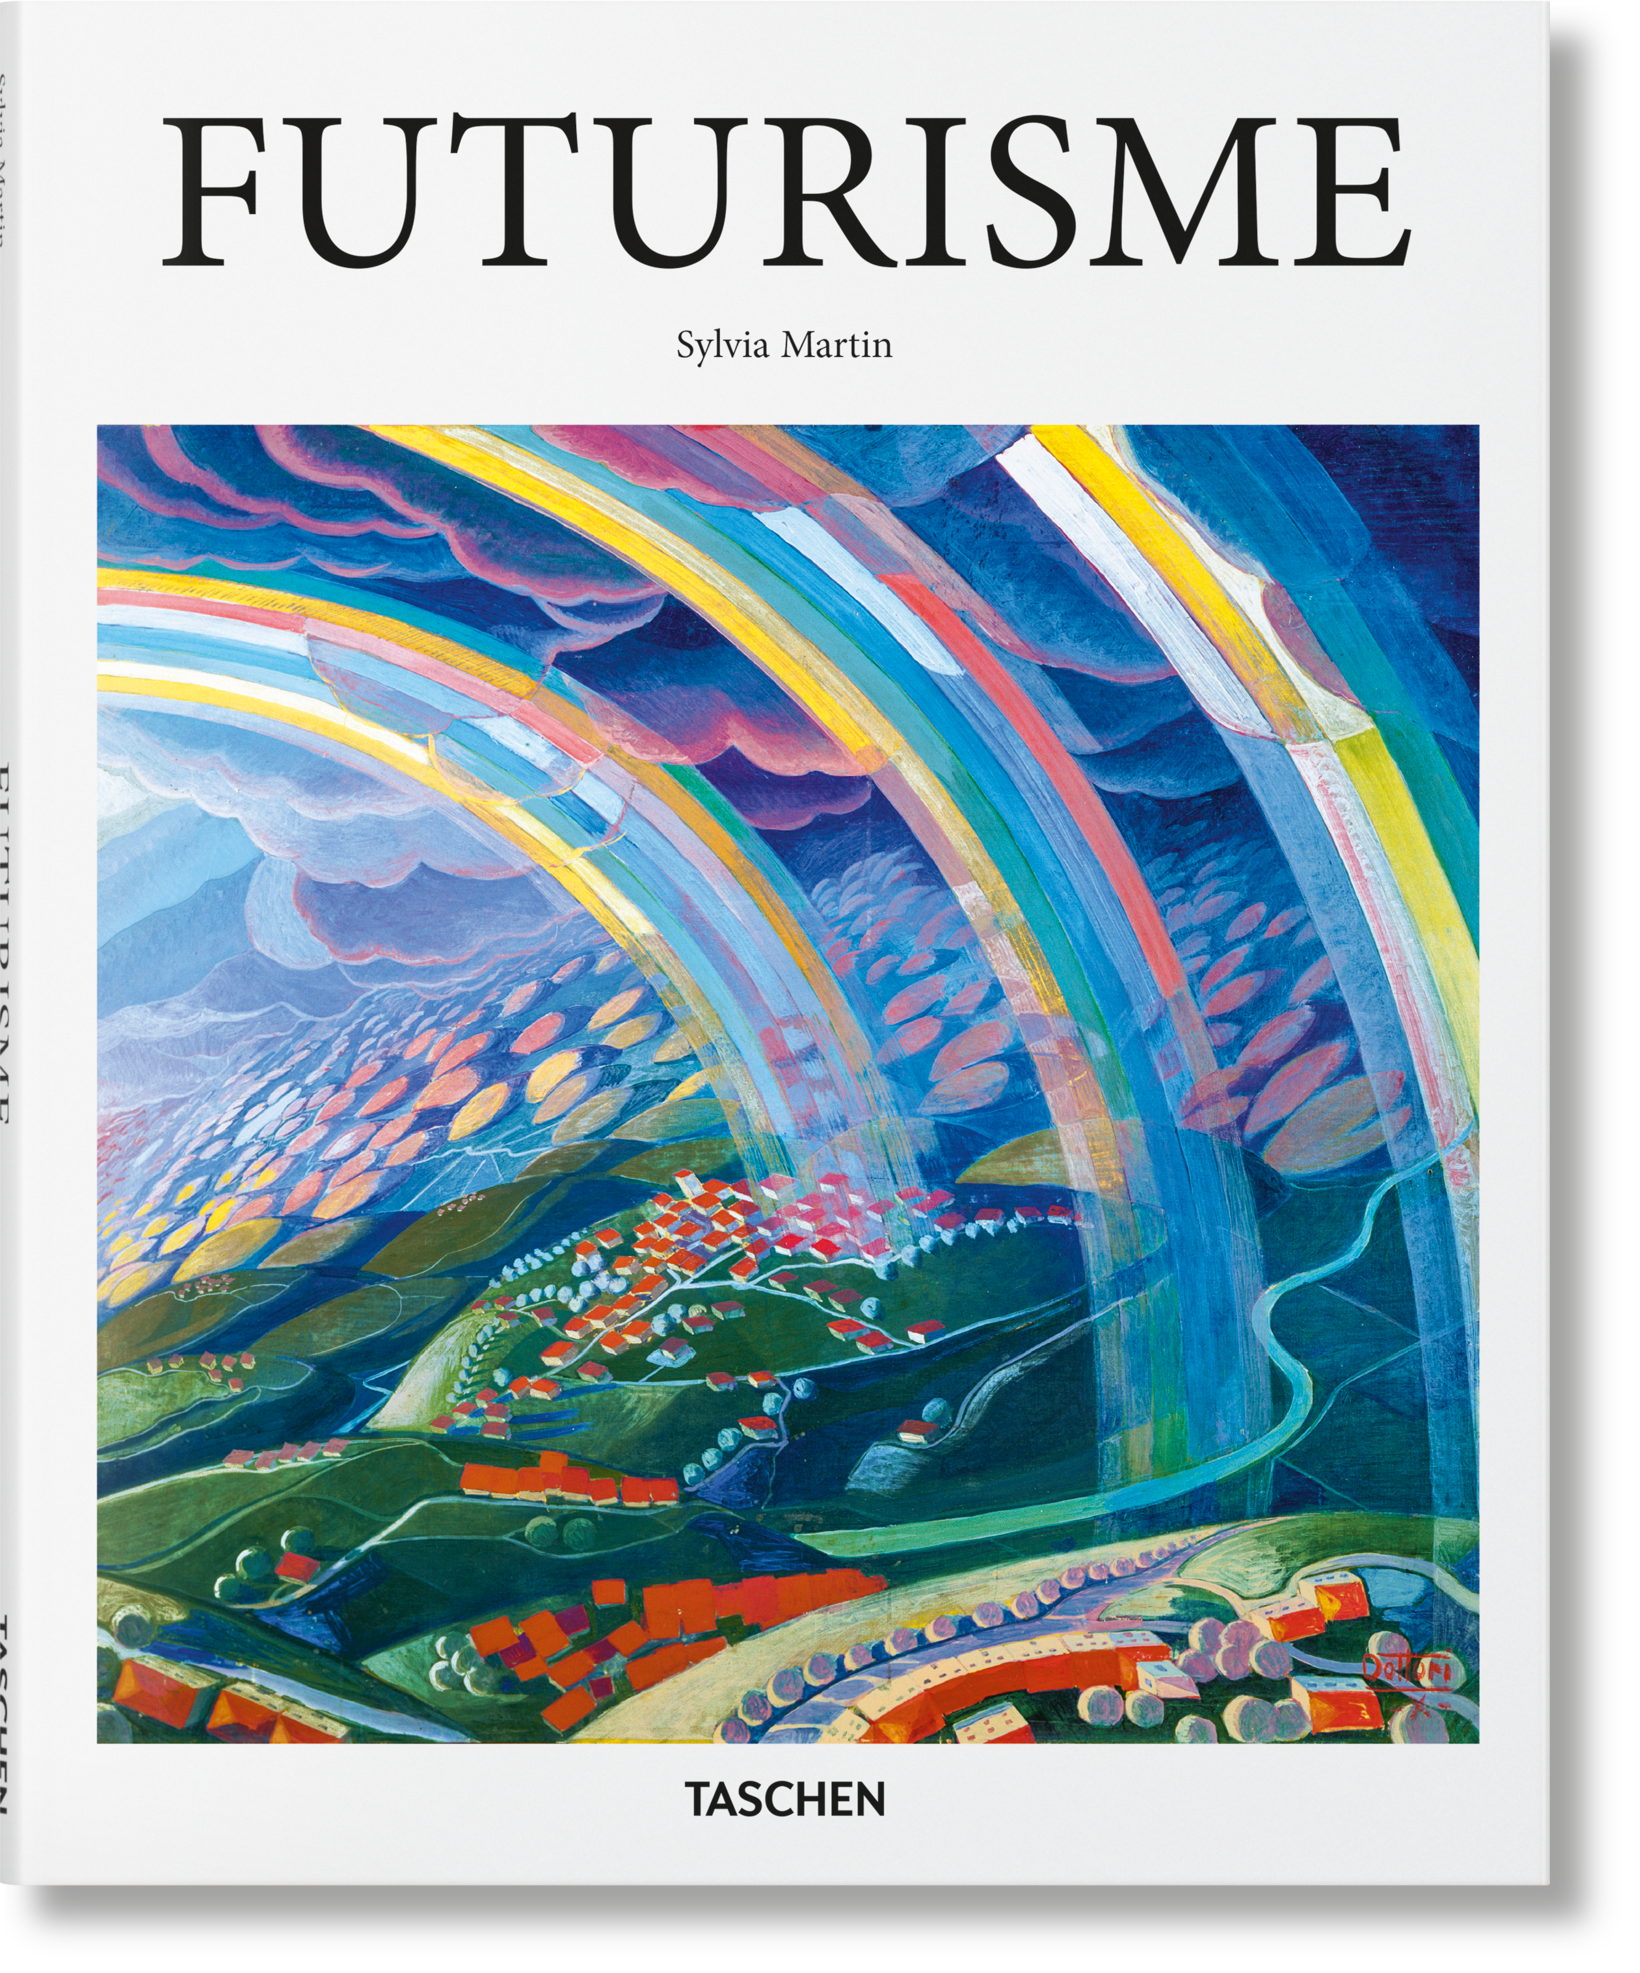 TASCHEN Books: Futurism